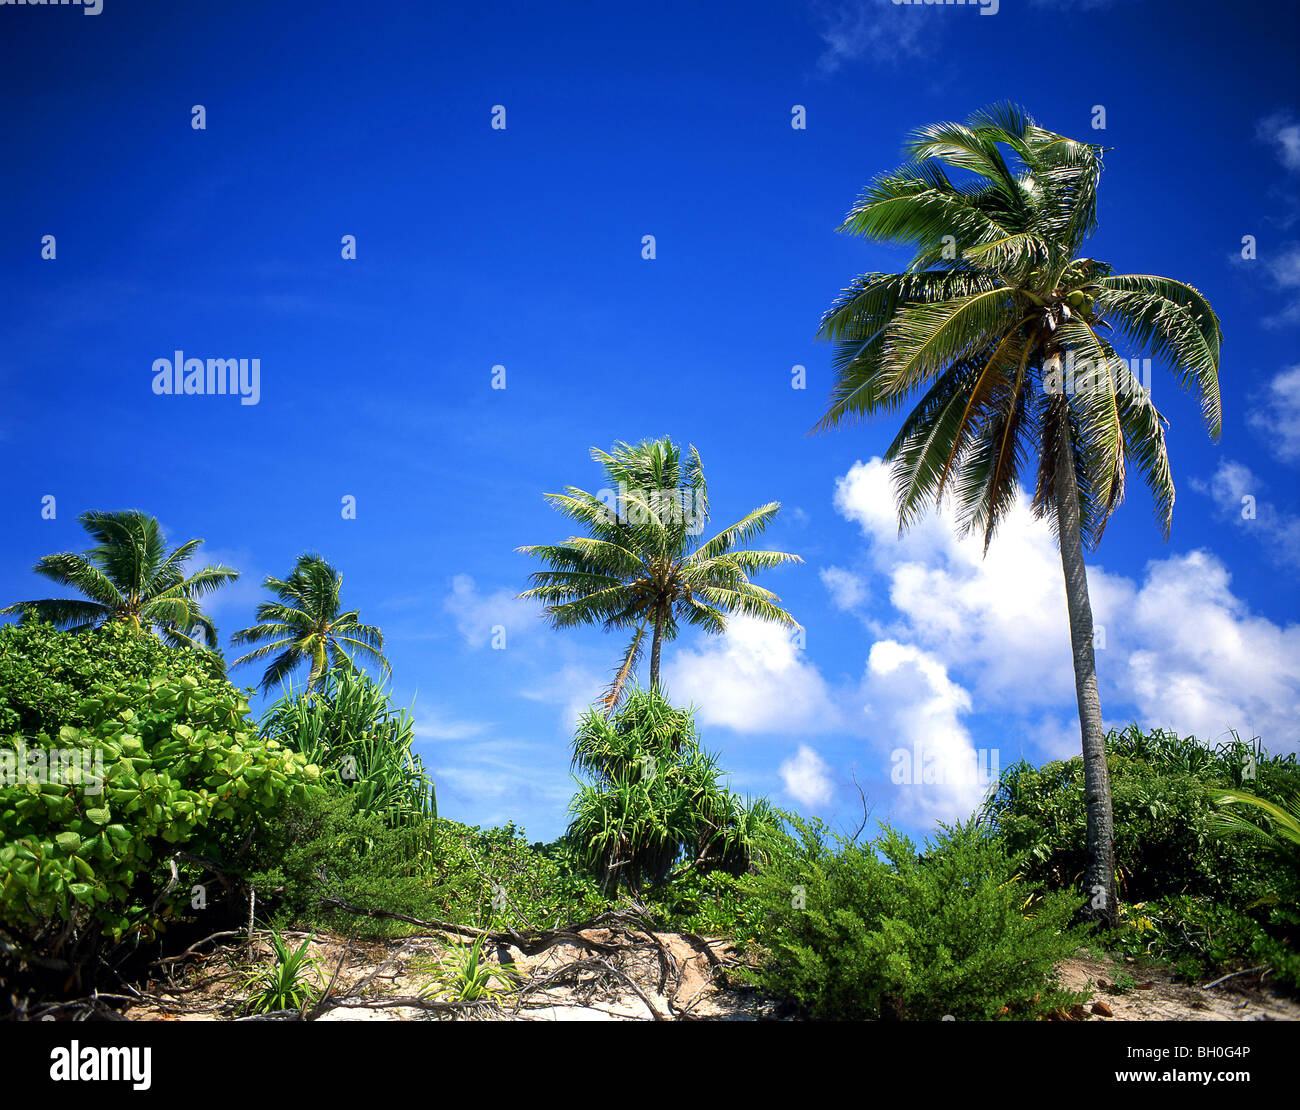 La vegetación tropical de la isla, el atolón Aitutaki, Islas Cook Foto de stock